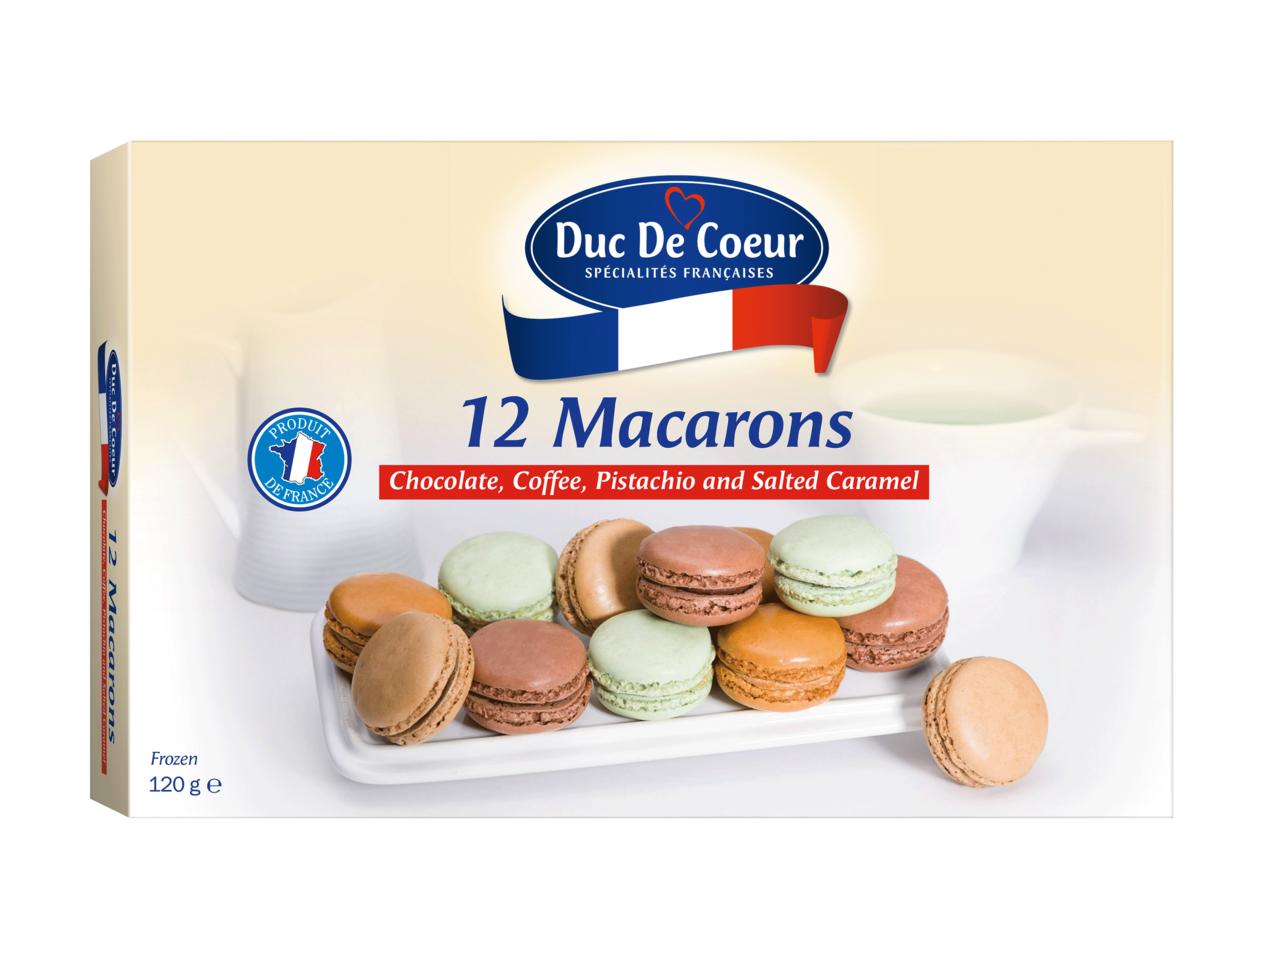 DUC DE COEUR 12 Macarons